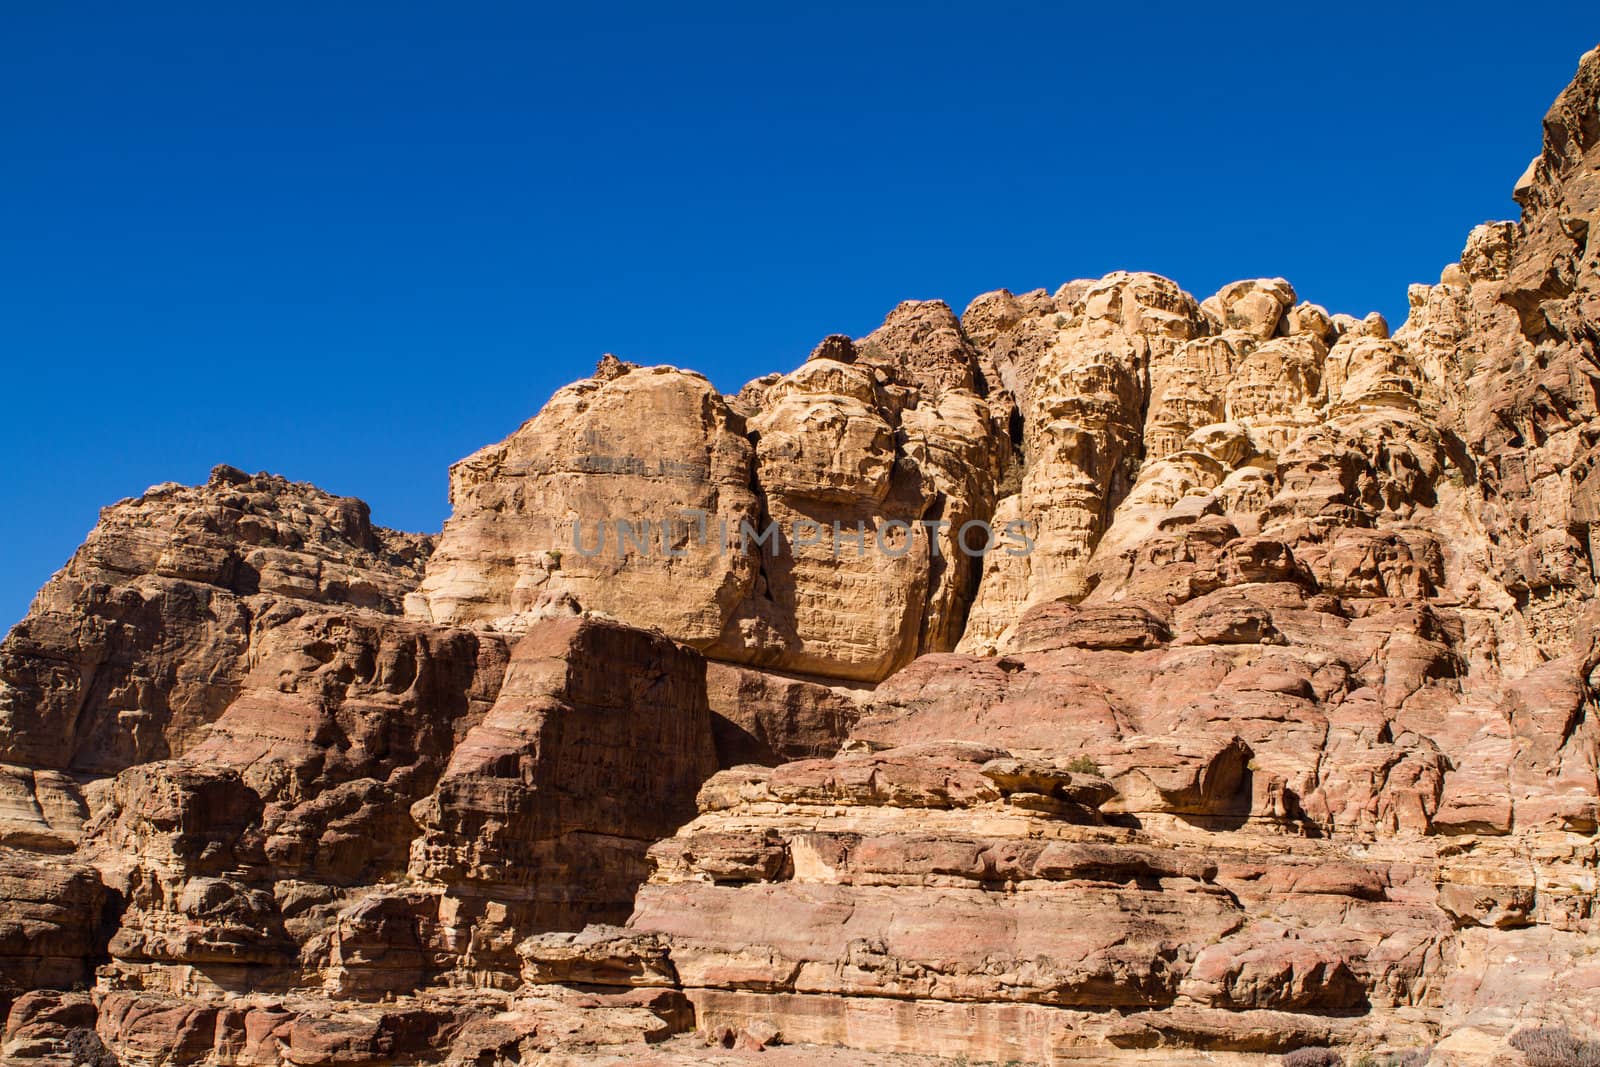 Landscape in Petra, Jordan